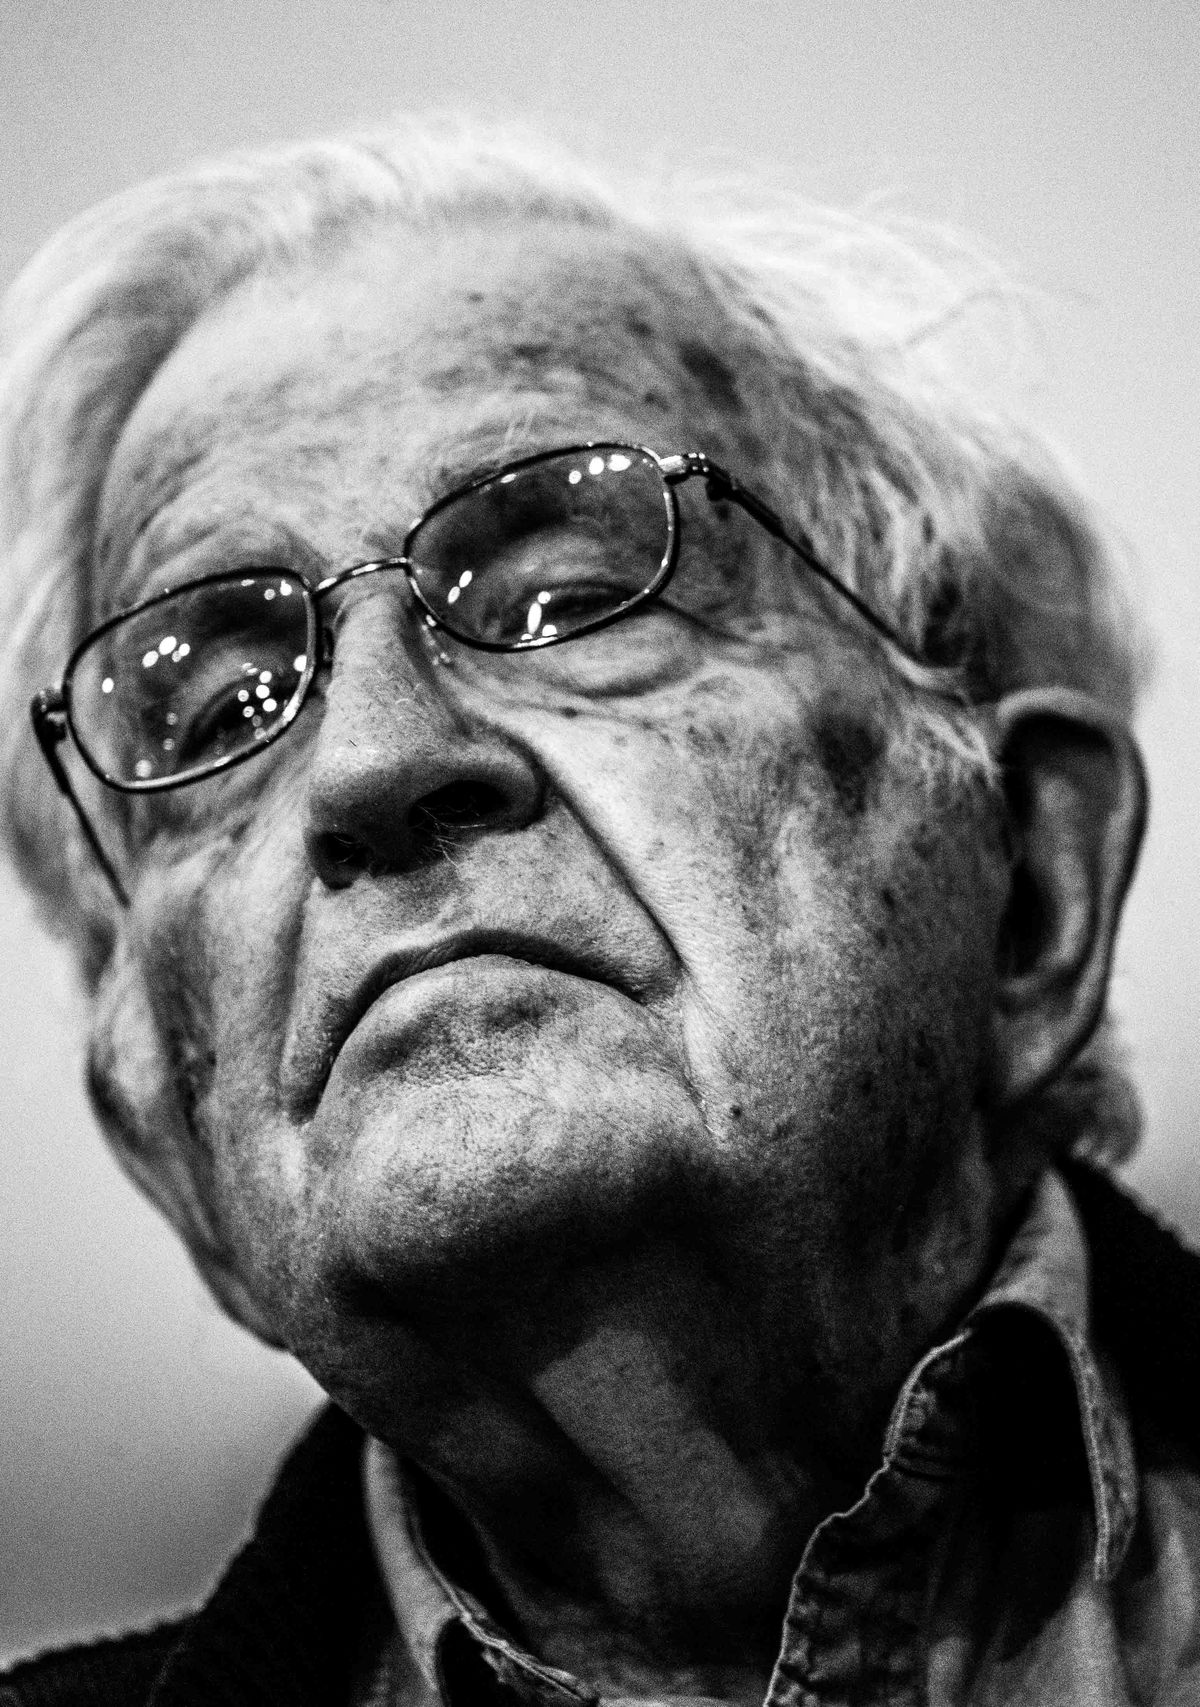 Noam Chomsky: “Yo crecí durante la Gran Depresión, pero entonces reinaba una atmósfera de esperanza”